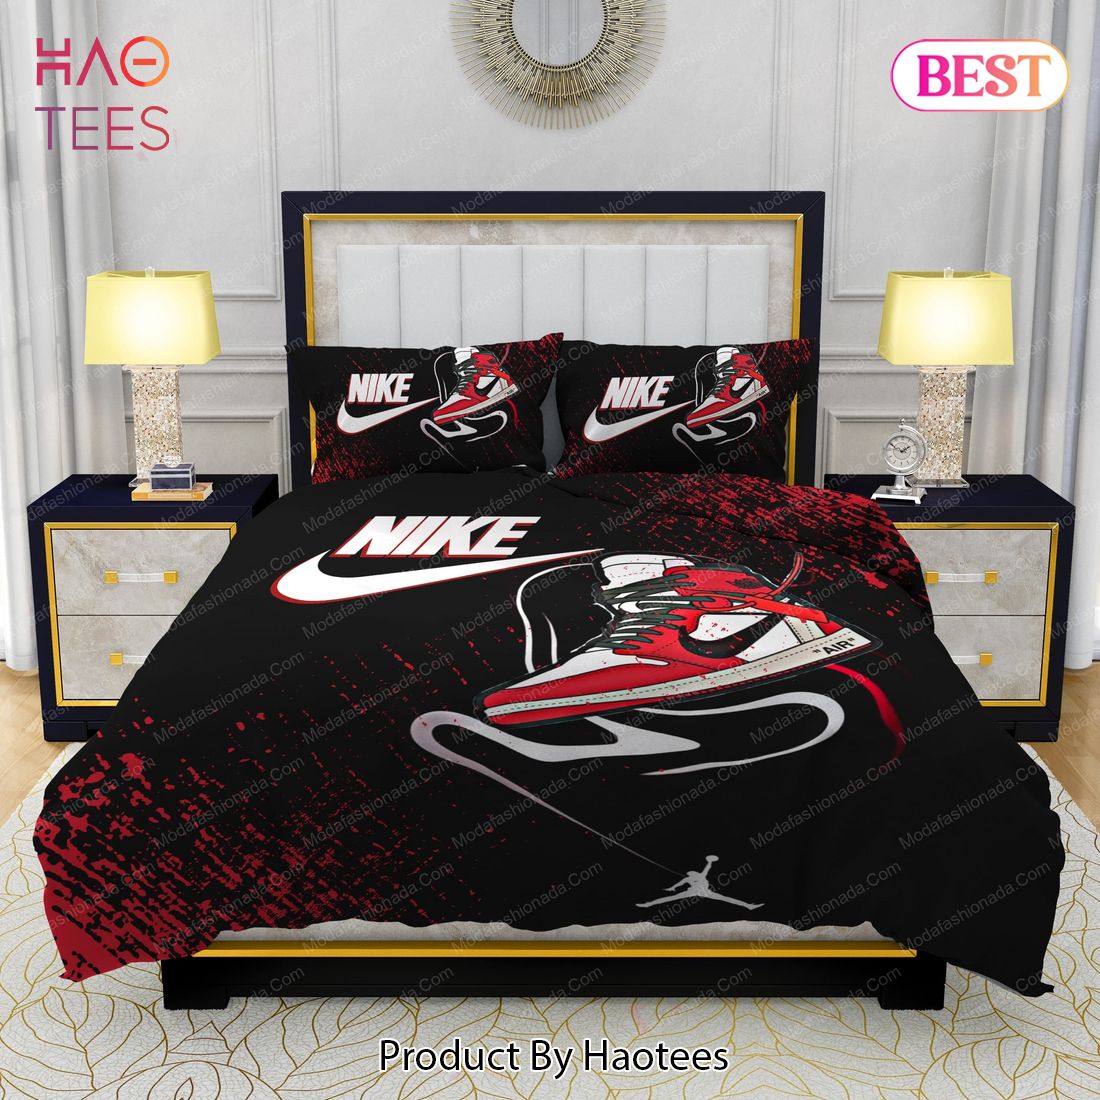 Nike Air Jordan Design & Quality Comfortable 4 Pieces Bedding Sets Bed Sets, Bedroom Sets, Comforter Sets, Duvet Cover, Bedspread